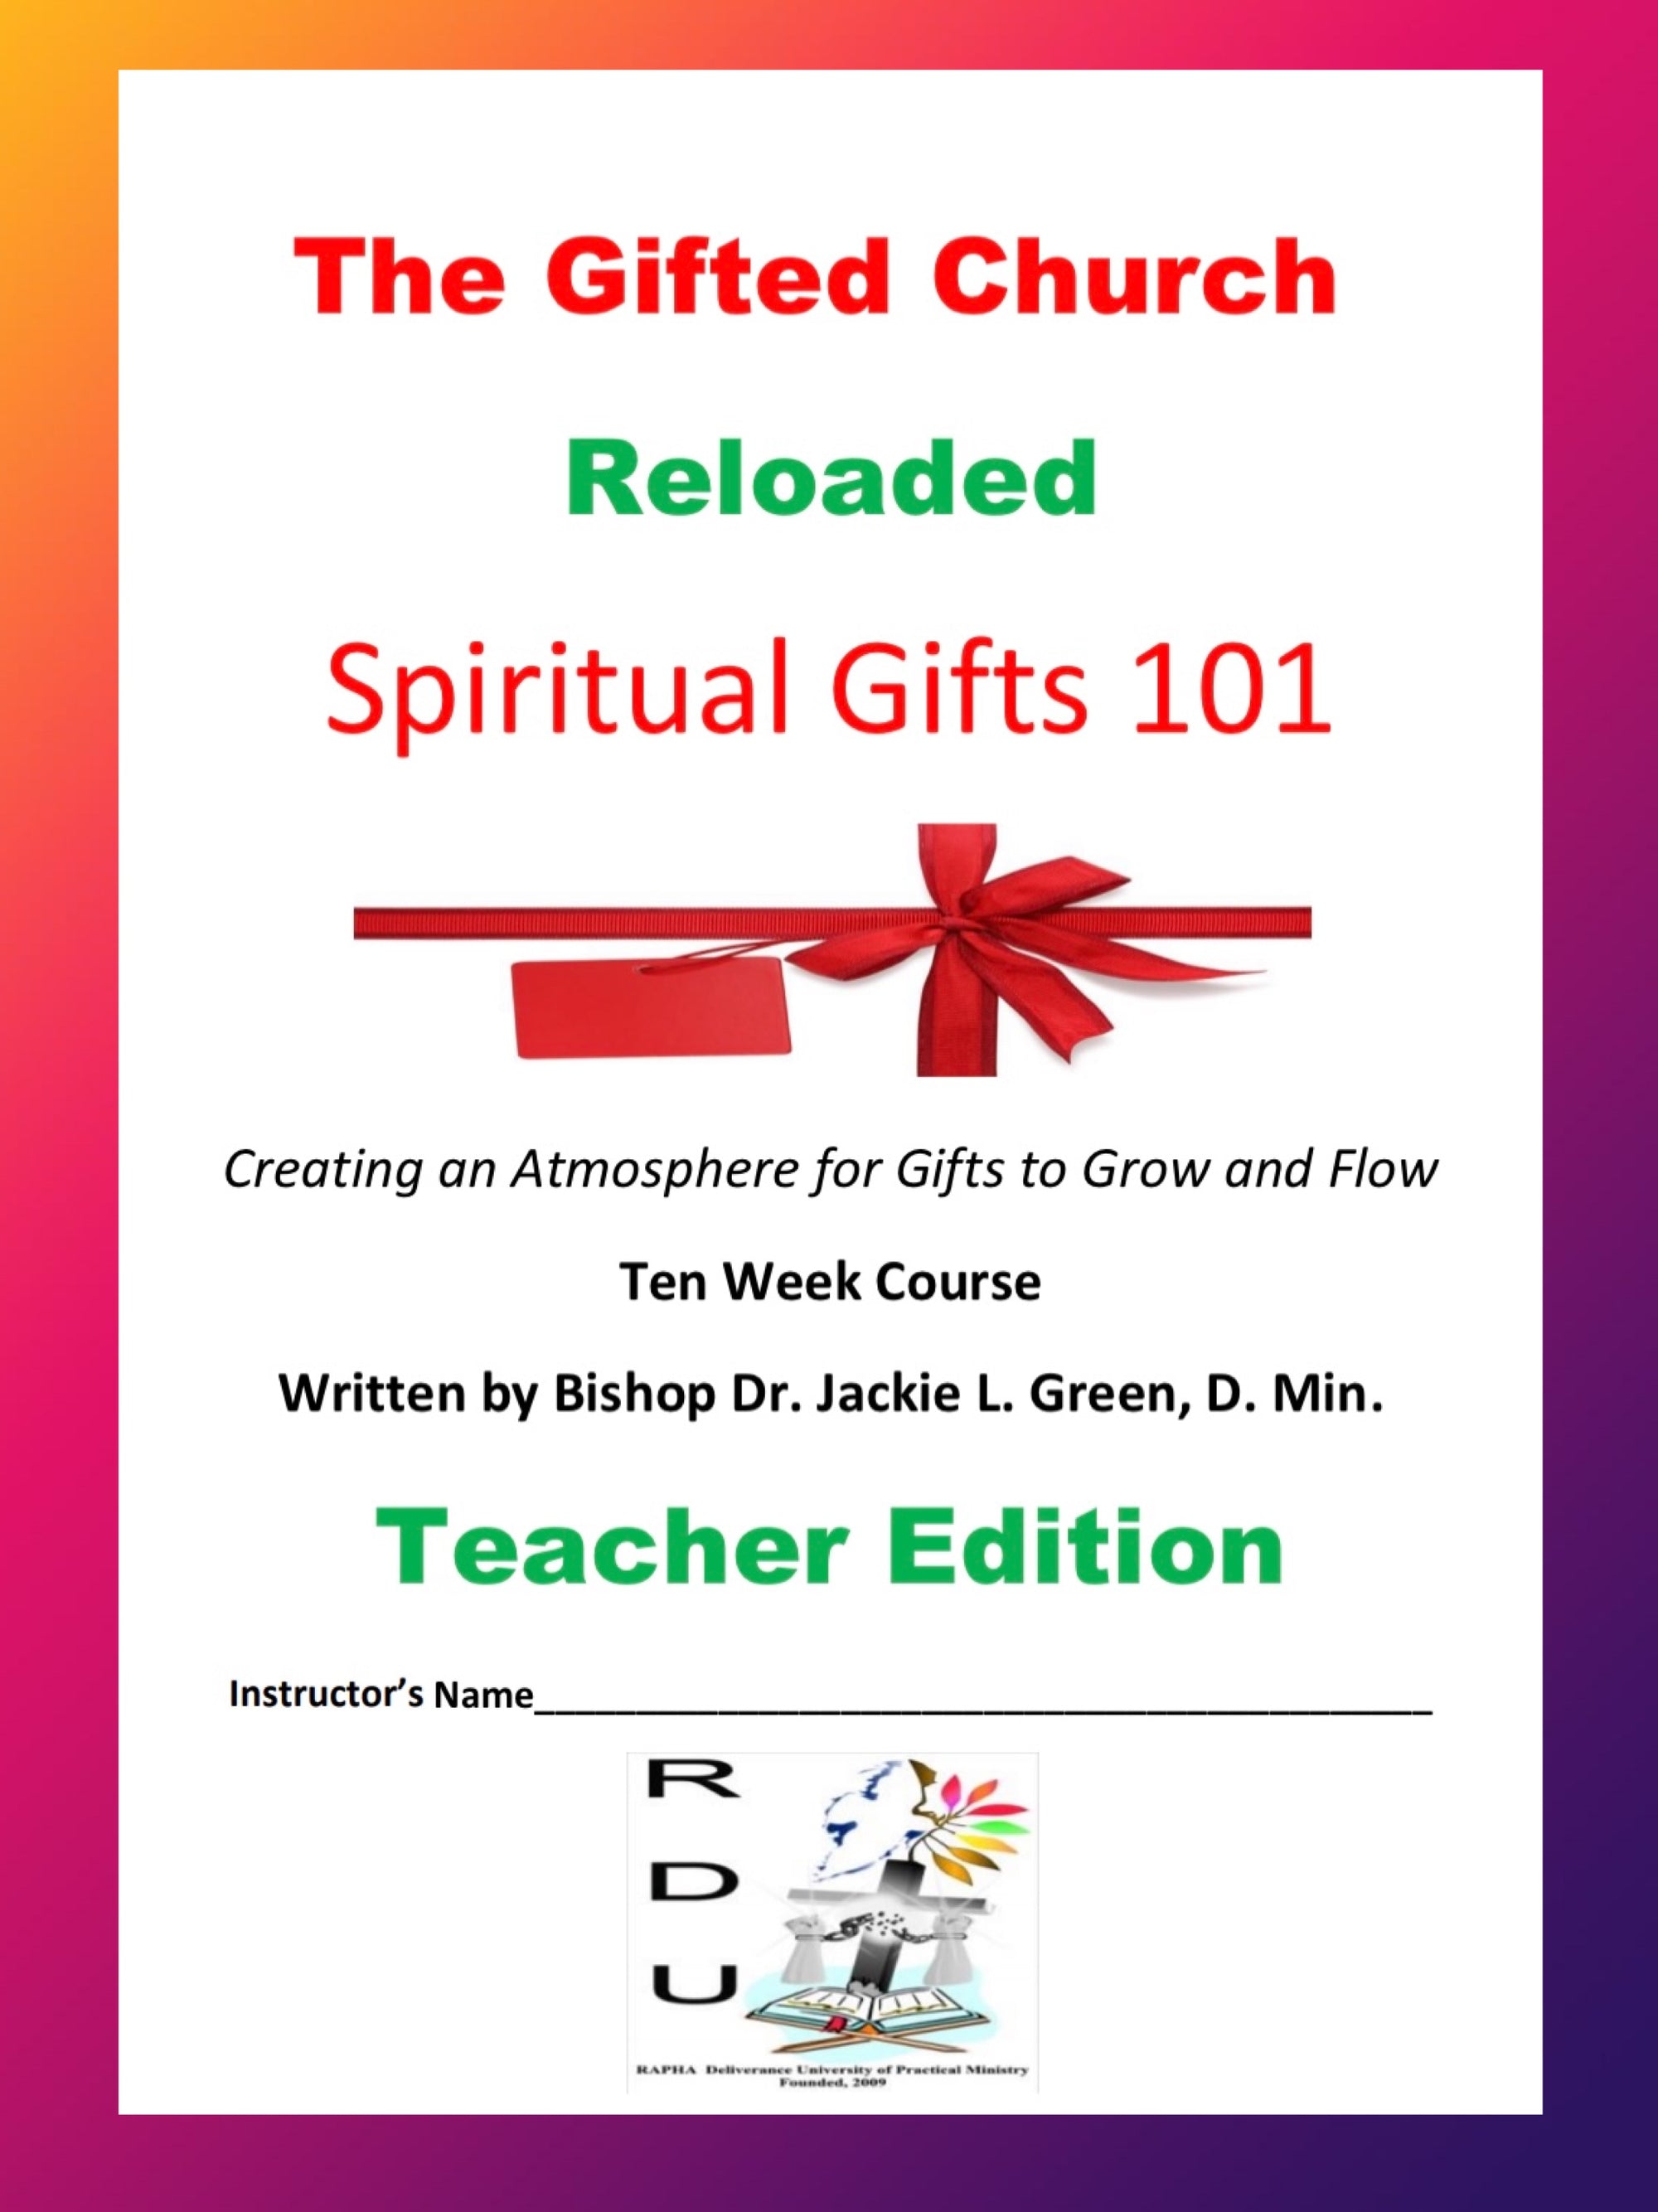 The Gifted Church Teacher Edition